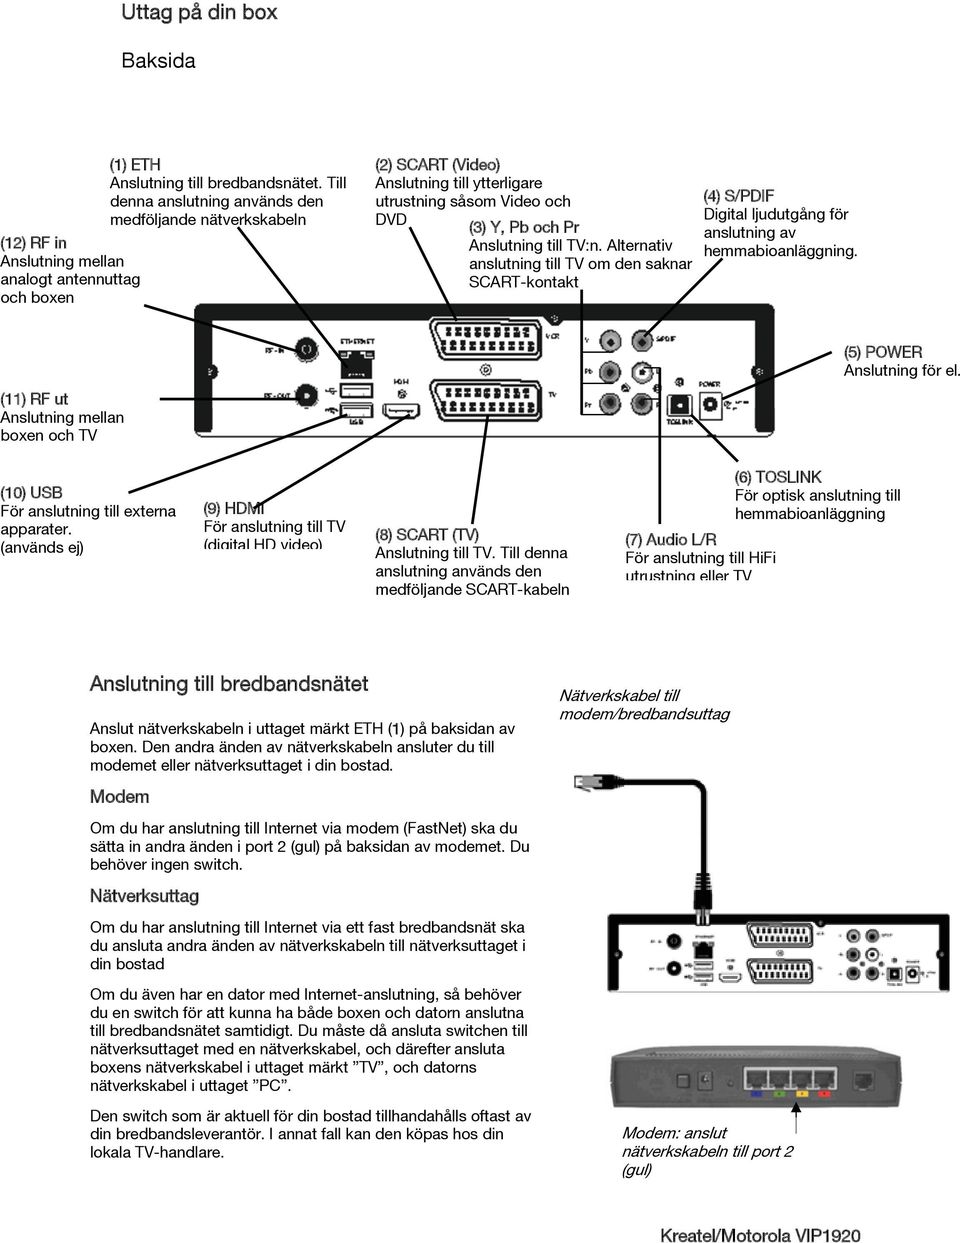 Alternativ anslutning till om den saknar SCART-kontakt (4) S/PDIF Digital ljudutgång för anslutning av hemmabioanläggning. (5) POWER Anslutning för el.